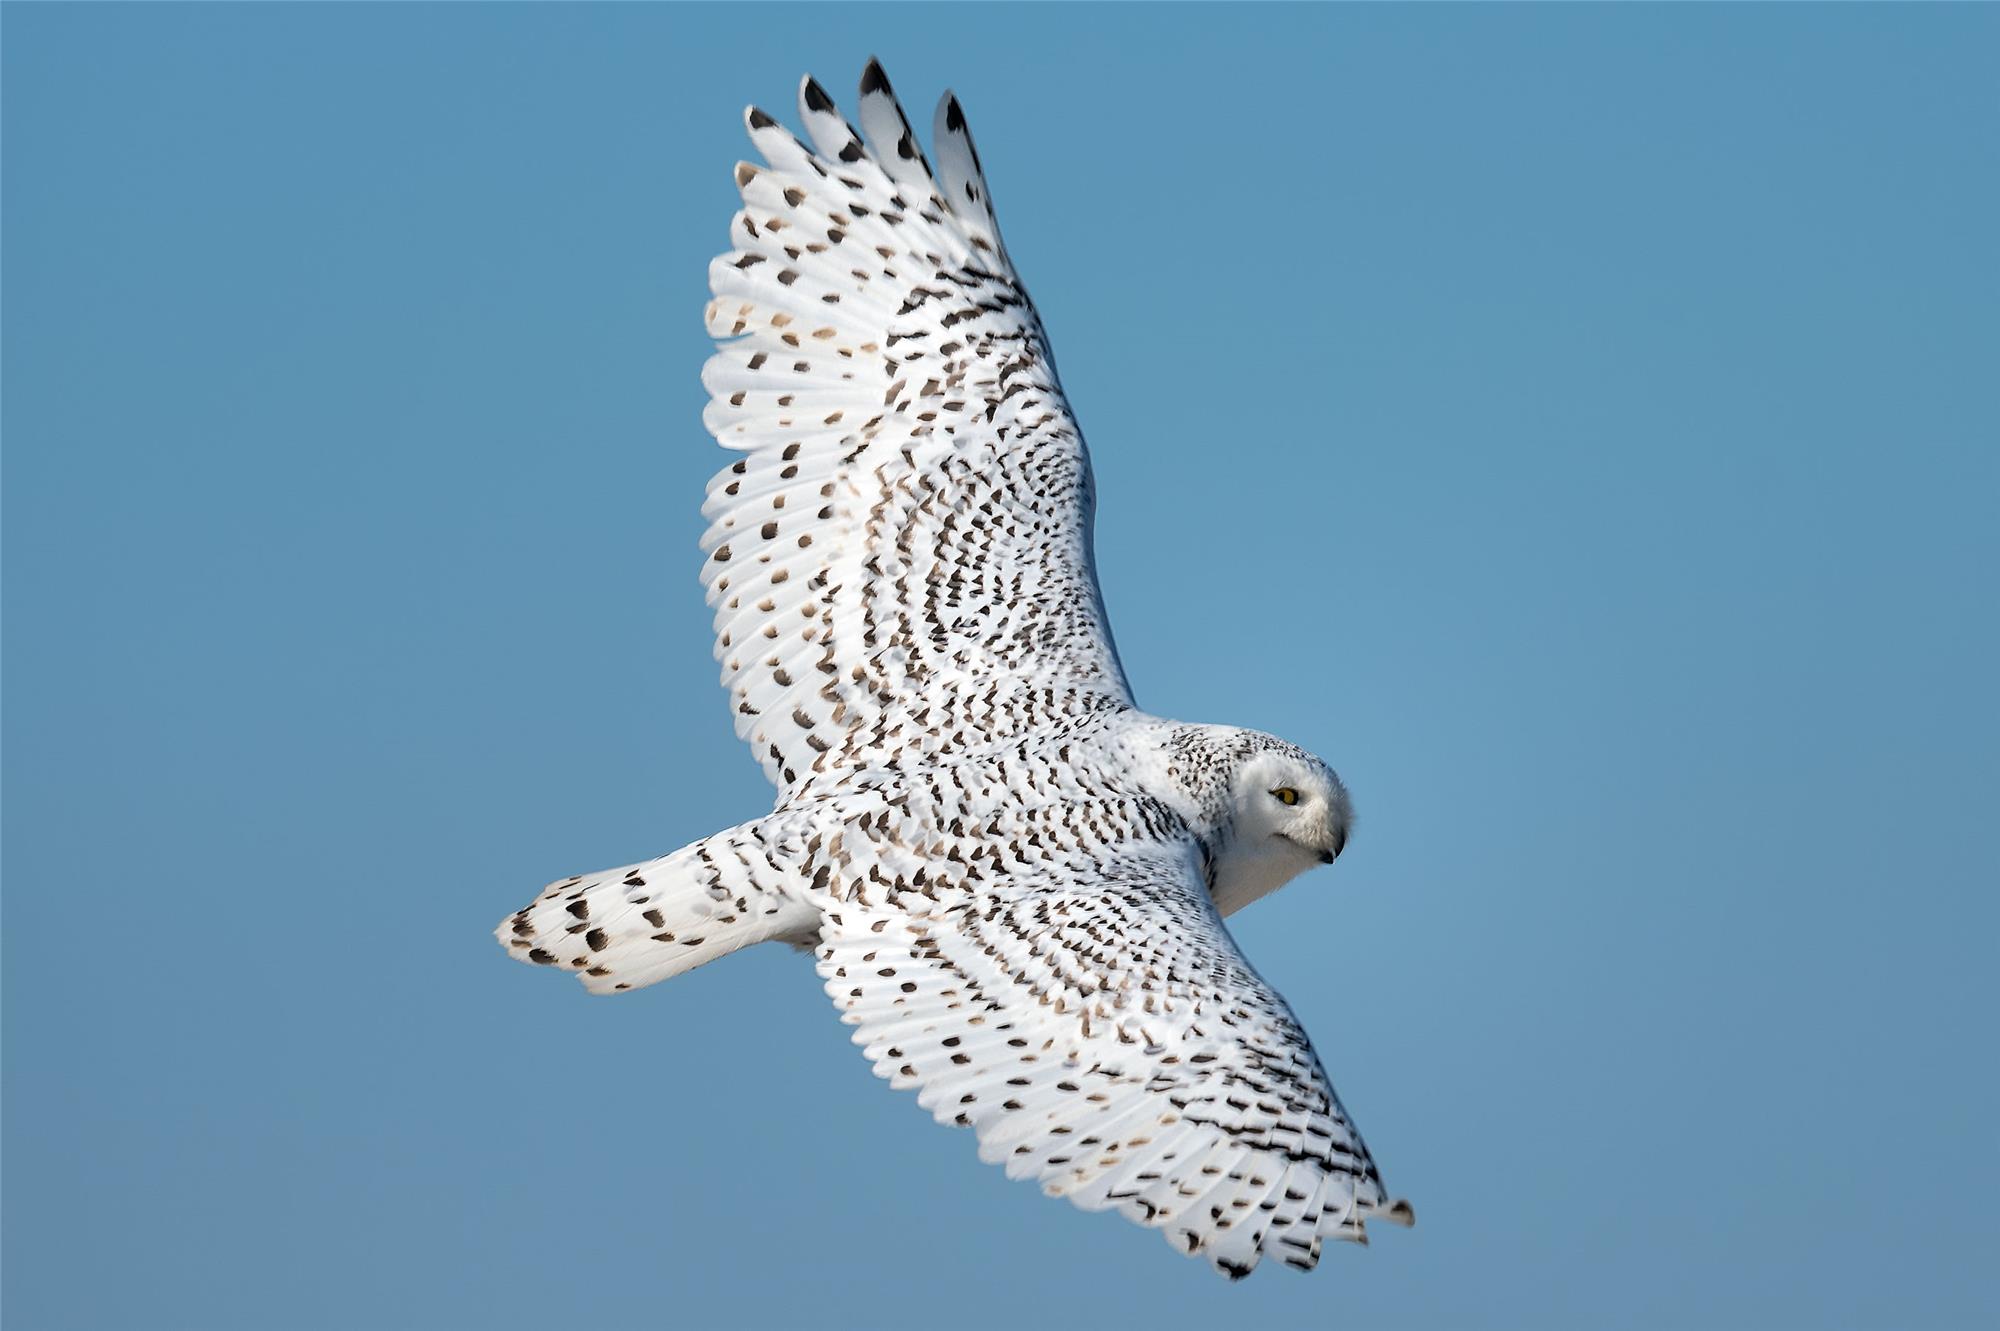 Snowy-owl-on-wing-by-Russ.jpg